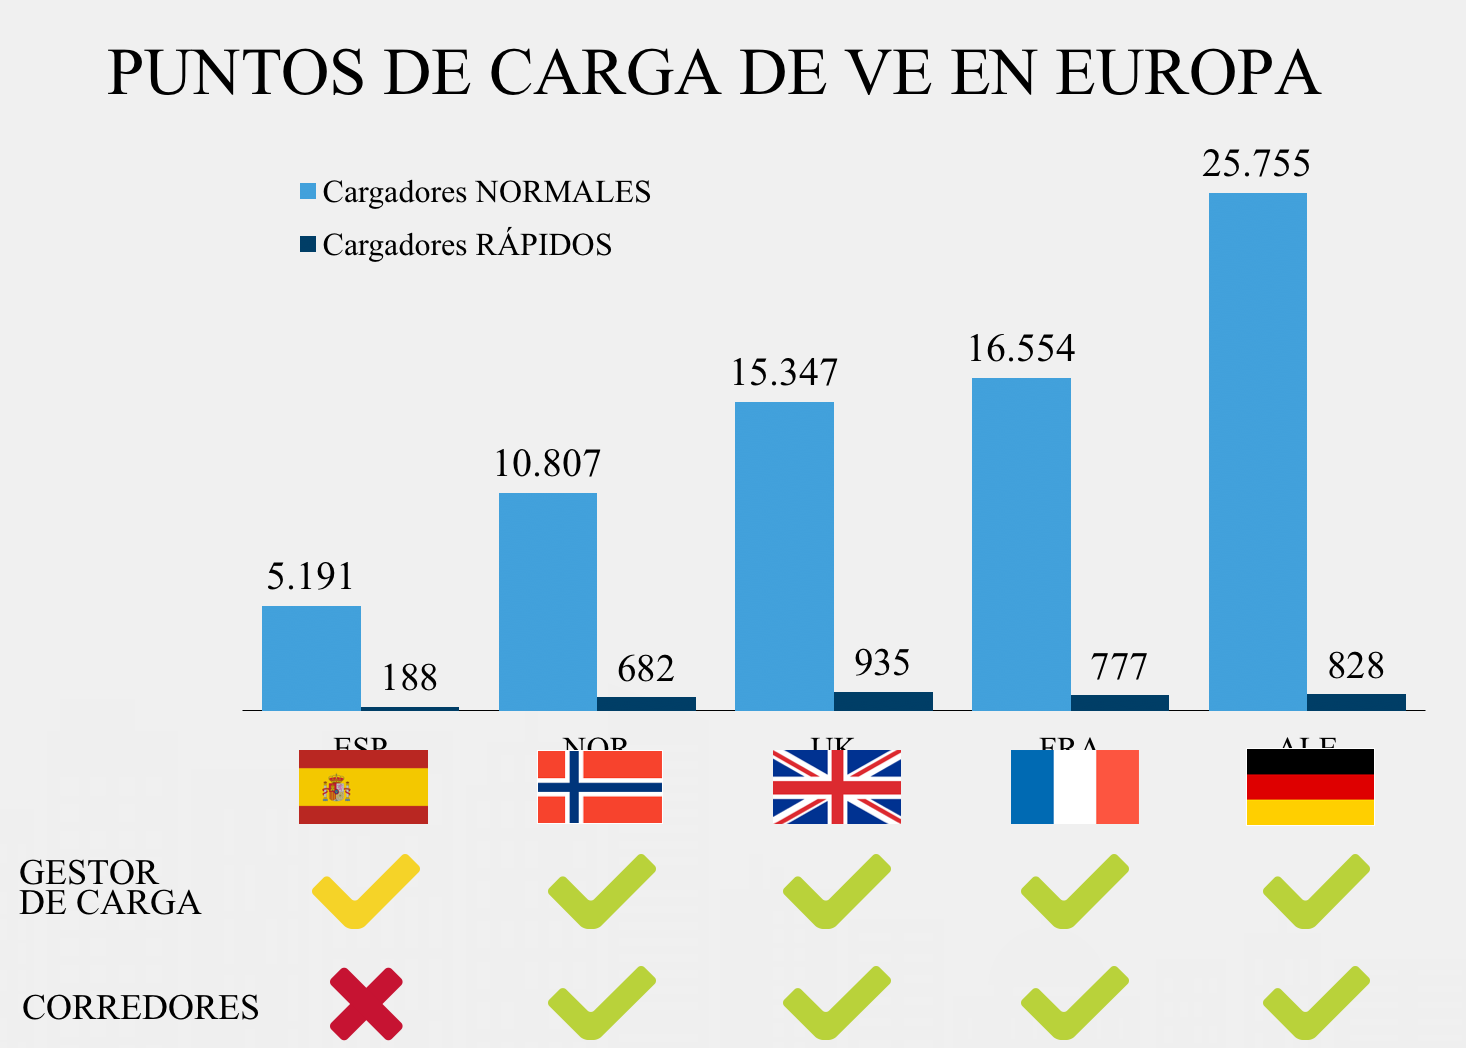 España tiene una infraestructura de cargadores muy por debajo a la de otros países europeos. (Fuente: Nissan)